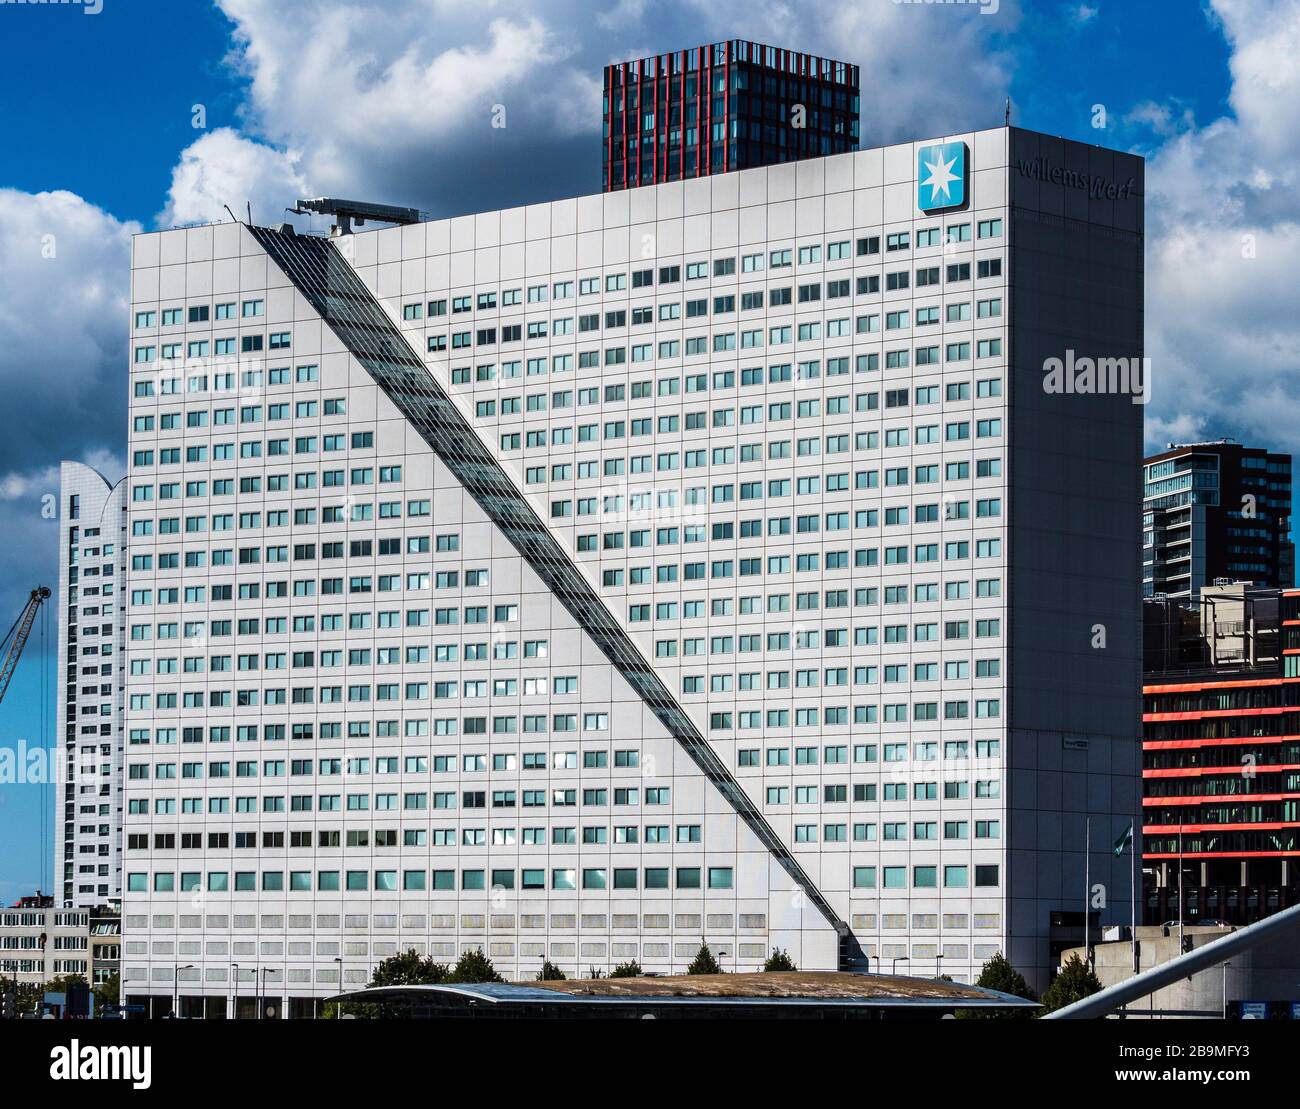 A. P. Møller – Mærsk A/S Willemswerf Rotterdam. L'immeuble de bureaux abrite actuellement le siège social néerlandais de Maersk. Terminé en 1988, architecte Wim Quist. Banque D'Images